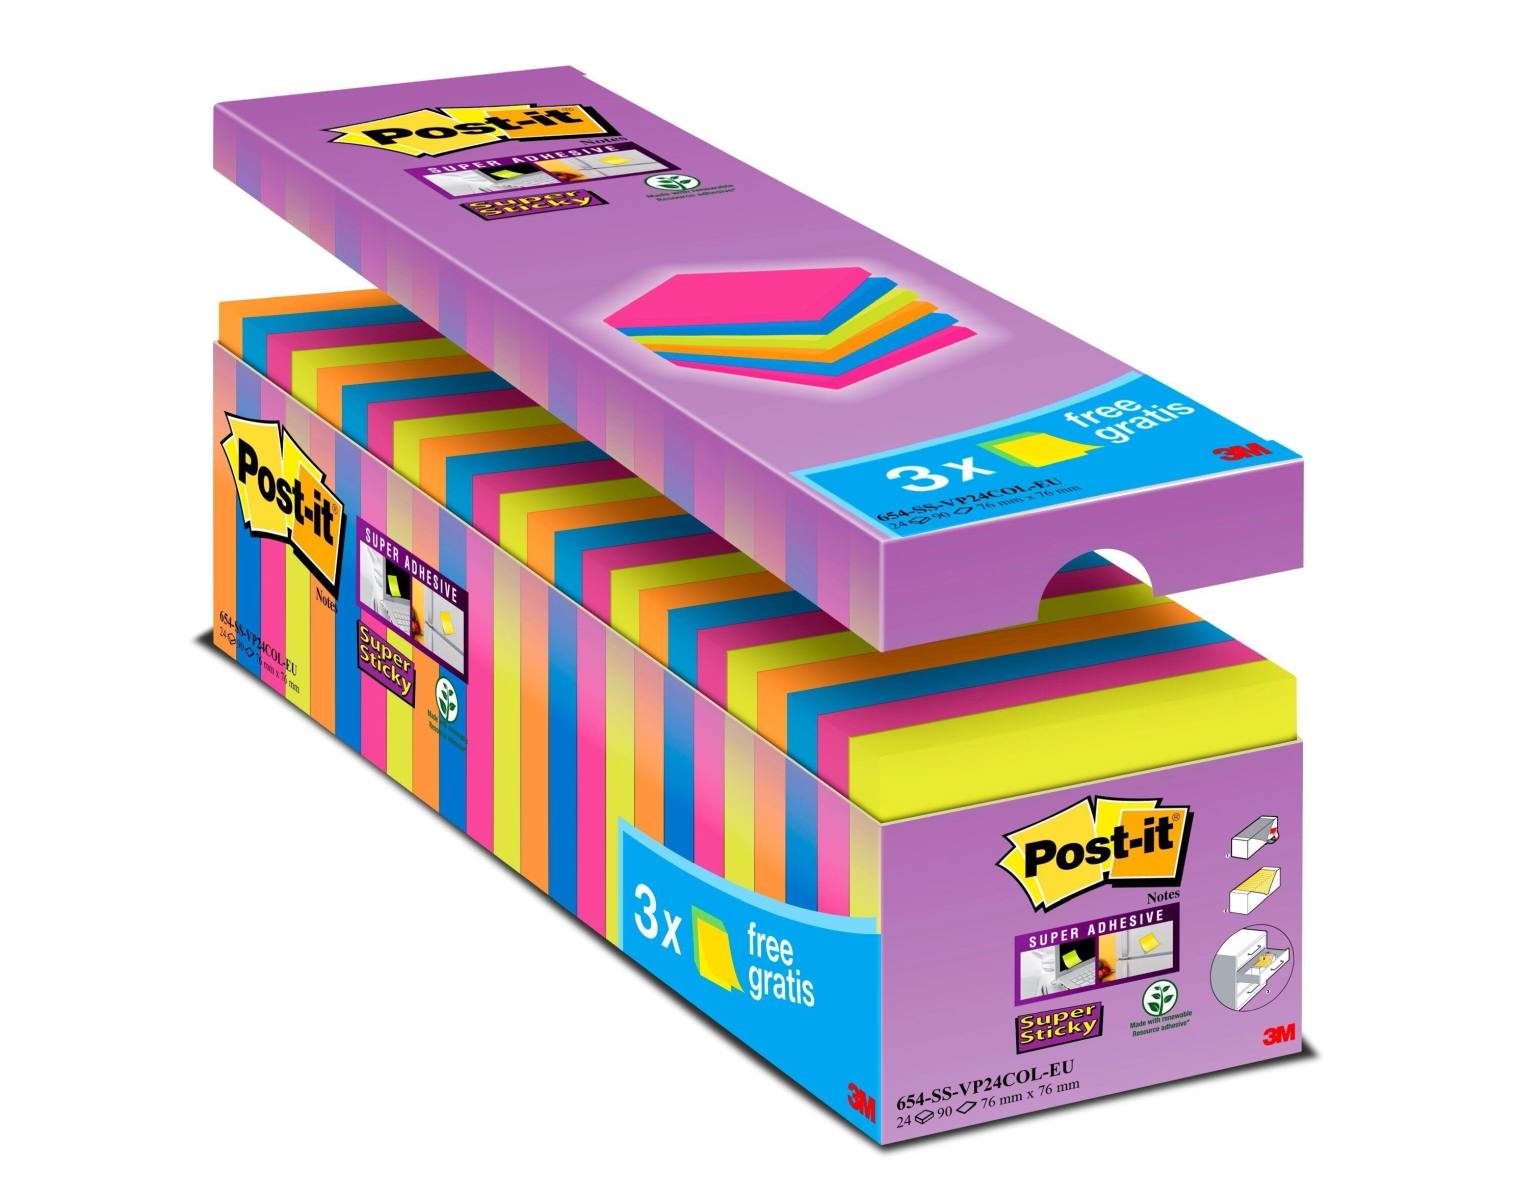 3M Post-it Super Sticky Notes Promotion 654SE24P, 24 kpl 90 arkin lehtiöitä erikoishintaan, valikoituja värejä, 76 mm x 76 mm